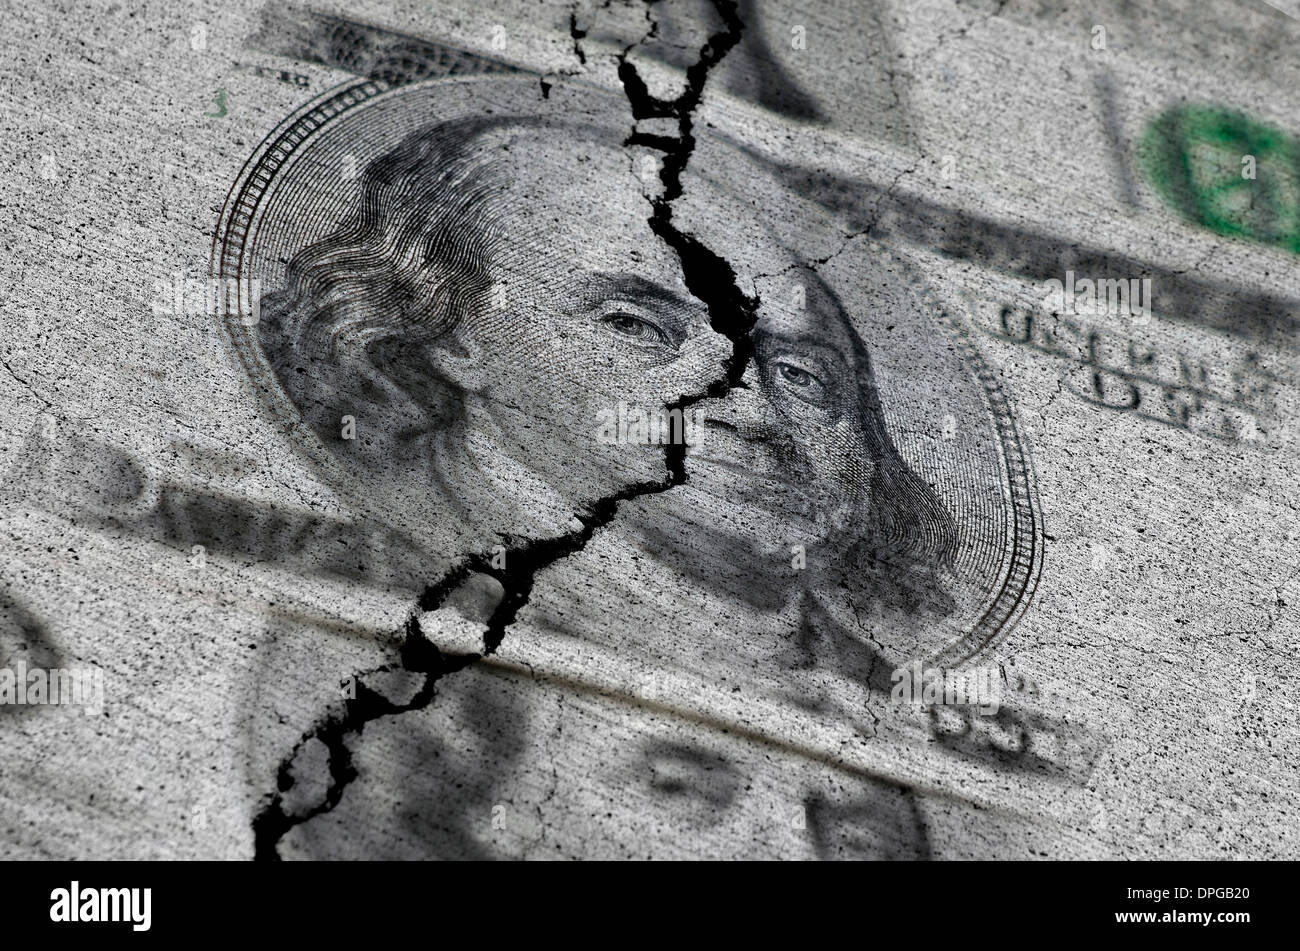 Mehrere US-Dollar gerissen oder zerrissen in der Mitte symbolisiert die Zerstörung der Wirtschaft Stockfoto